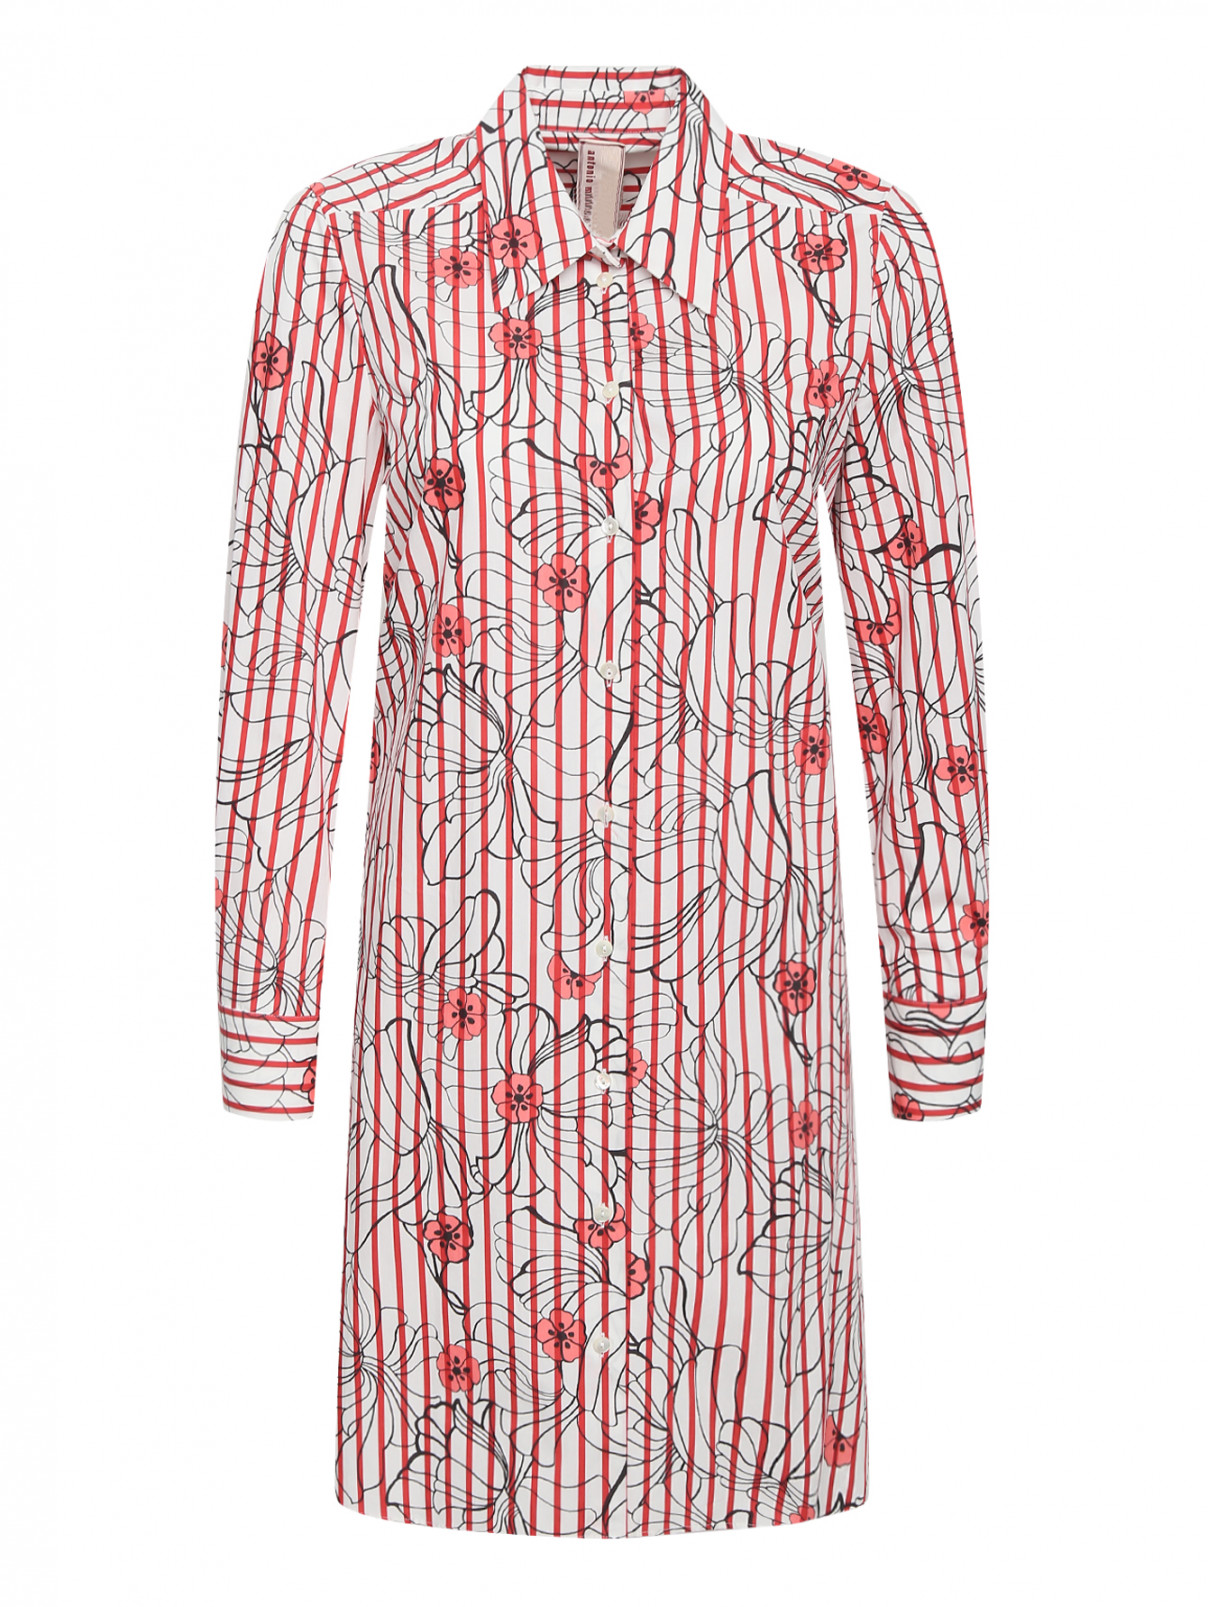 Платье-рубашка из хлопка с цветочным узором Antonio Marras  –  Общий вид  – Цвет:  Красный